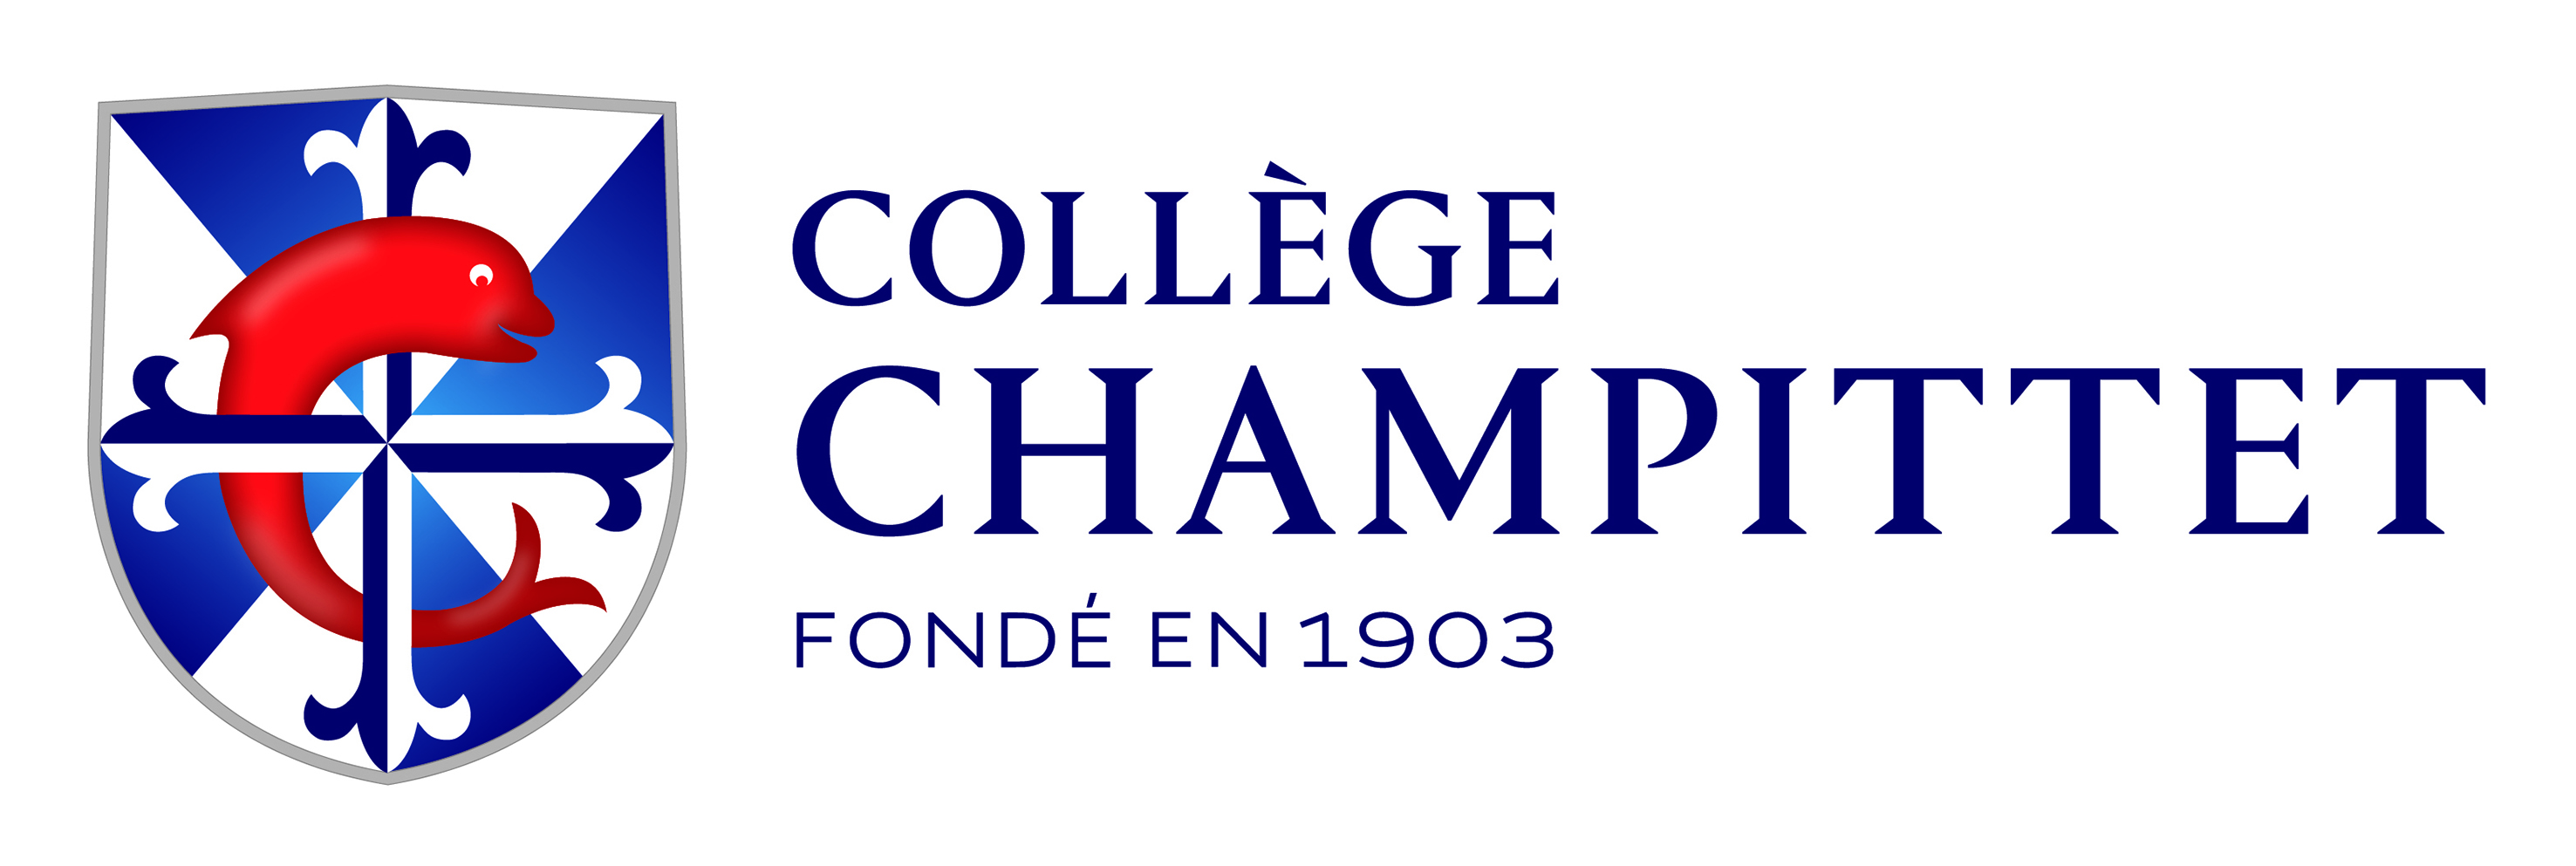 CChampittet Logo